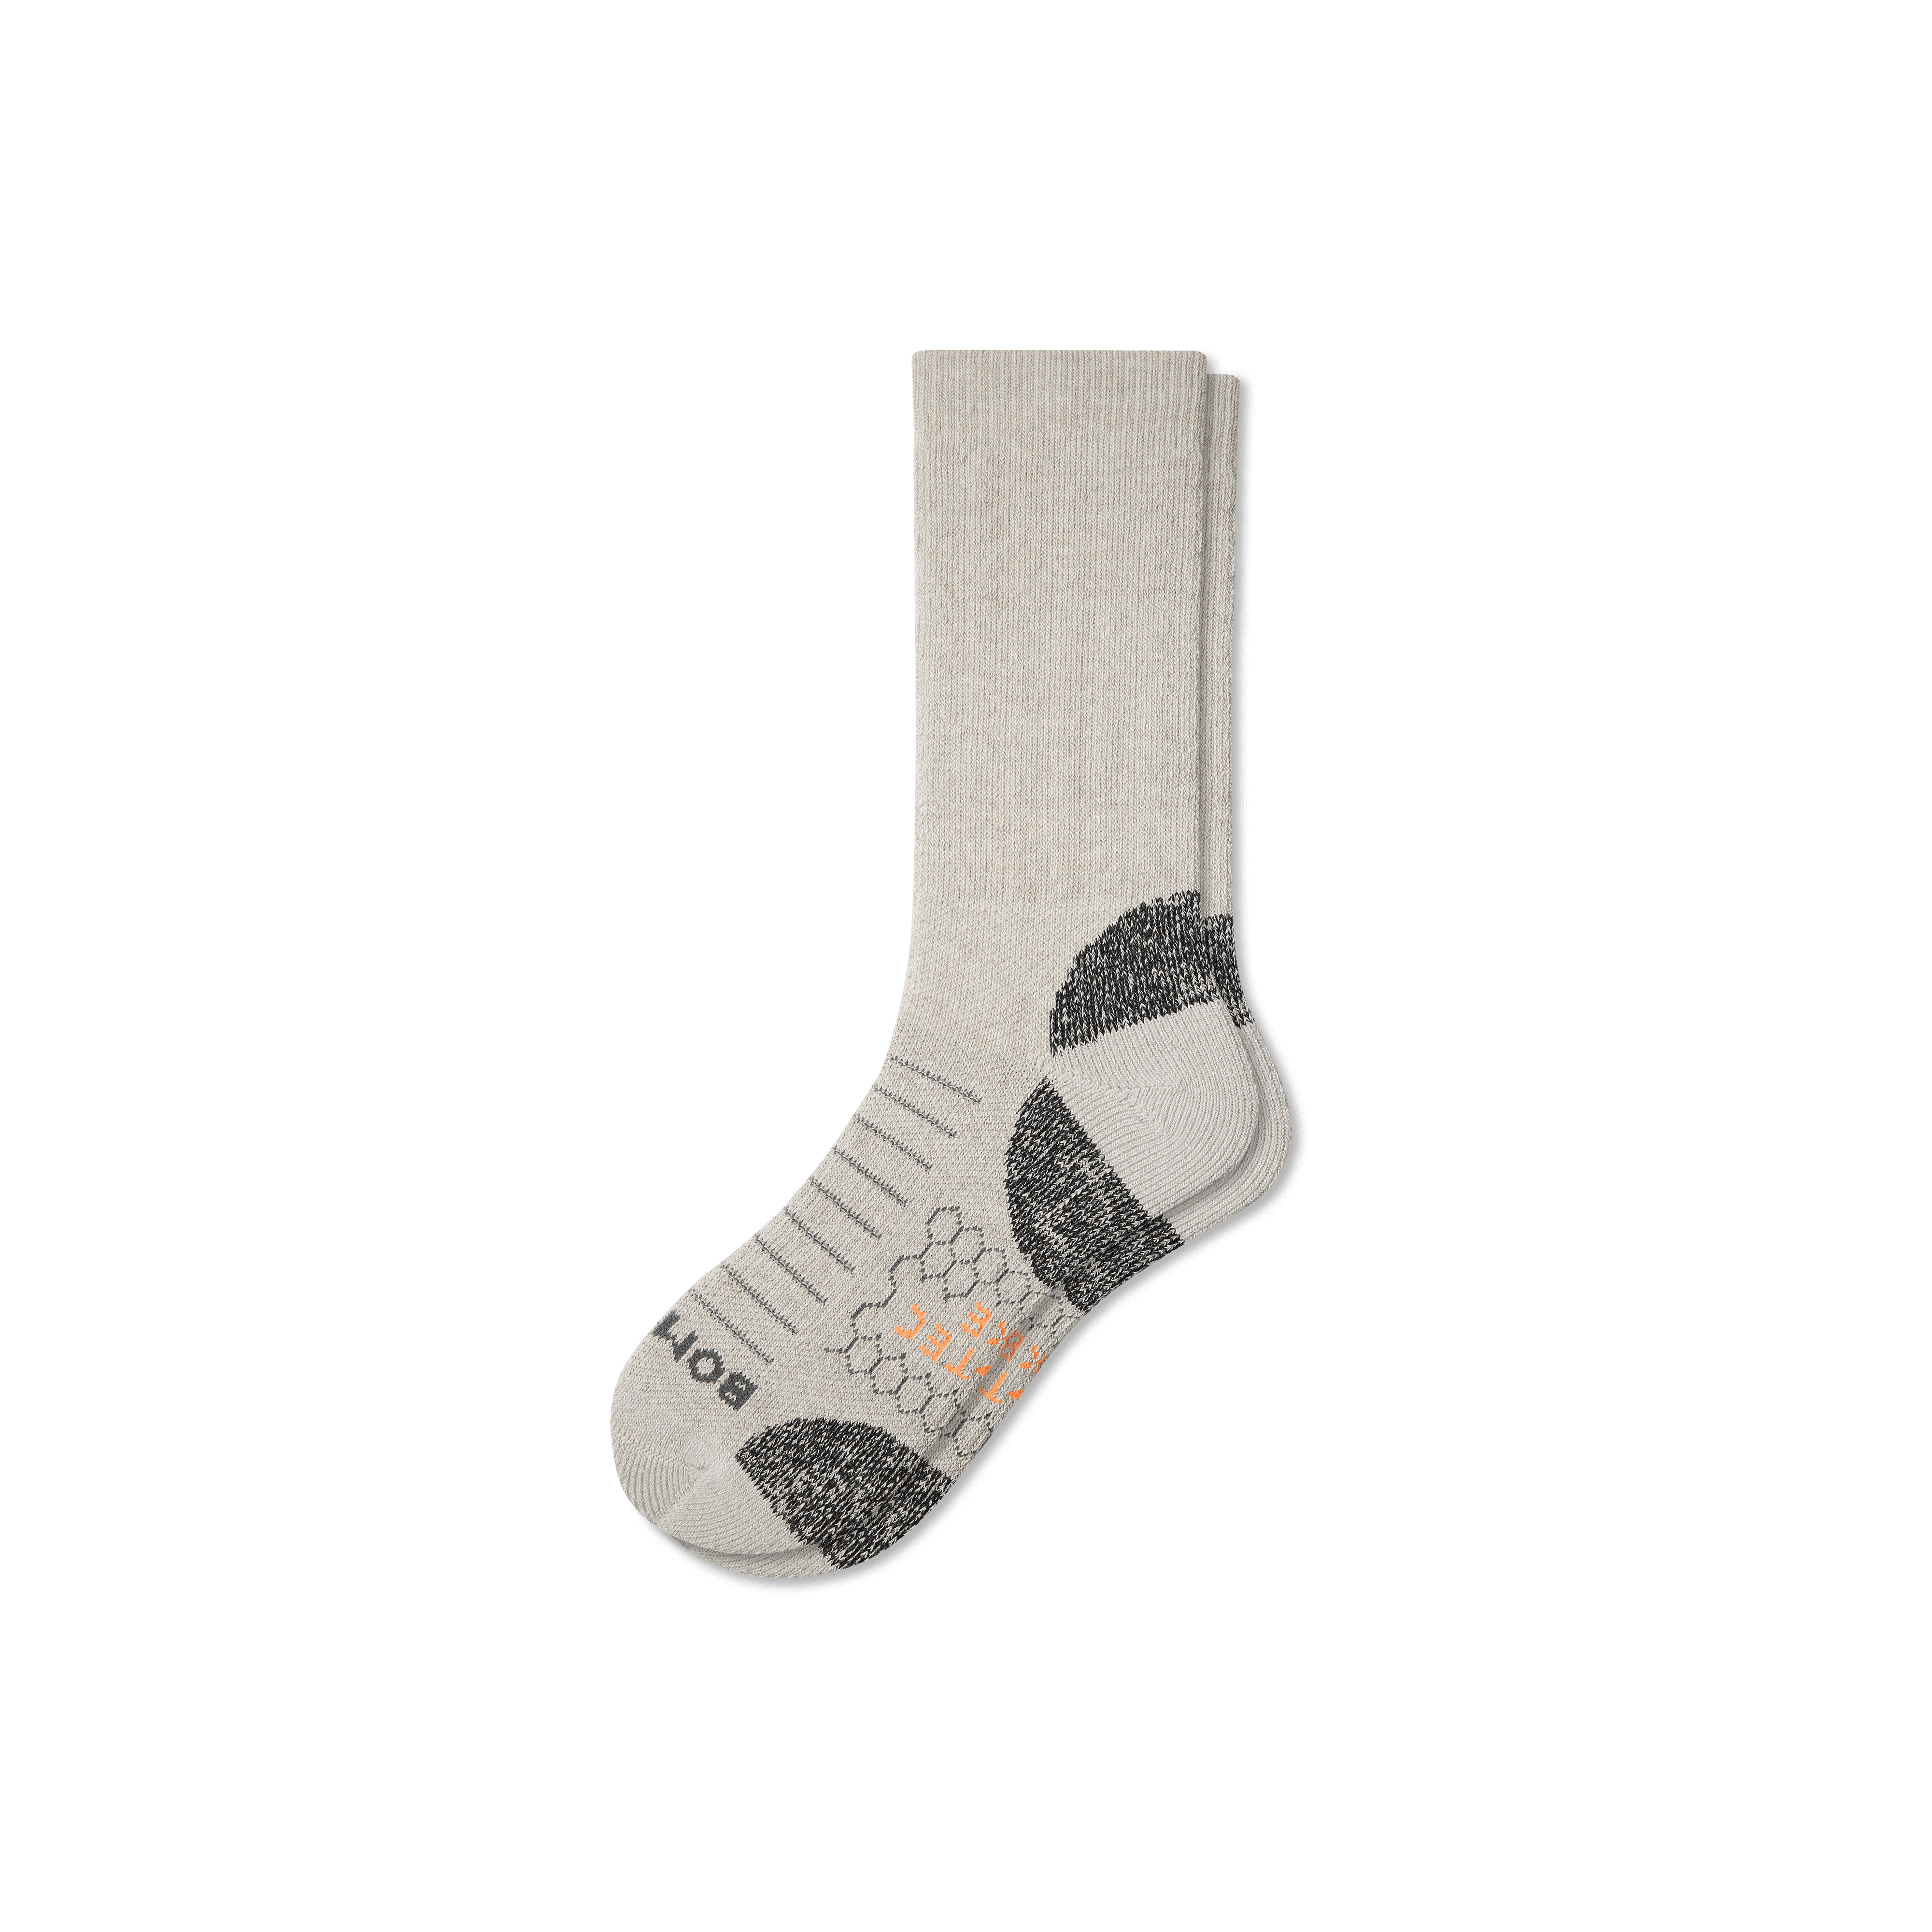 Bombas Hiking Performance Calf Socks In Oatmeal